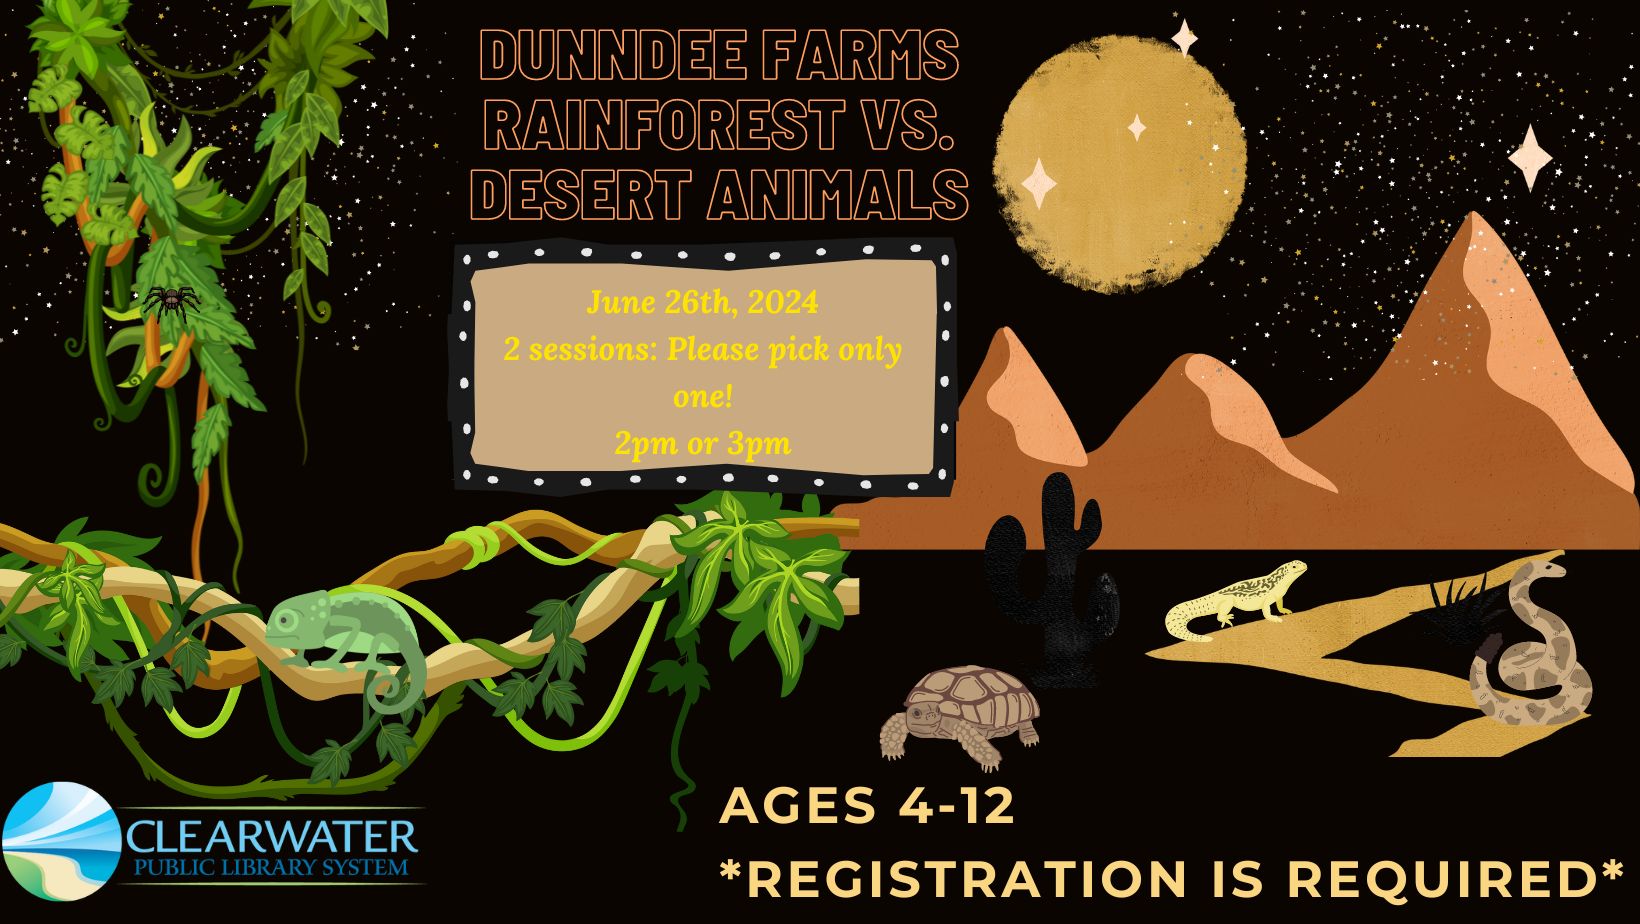 DunnDee Farms June 26th, 2024 2pm Rainforest vs Desert Animals 